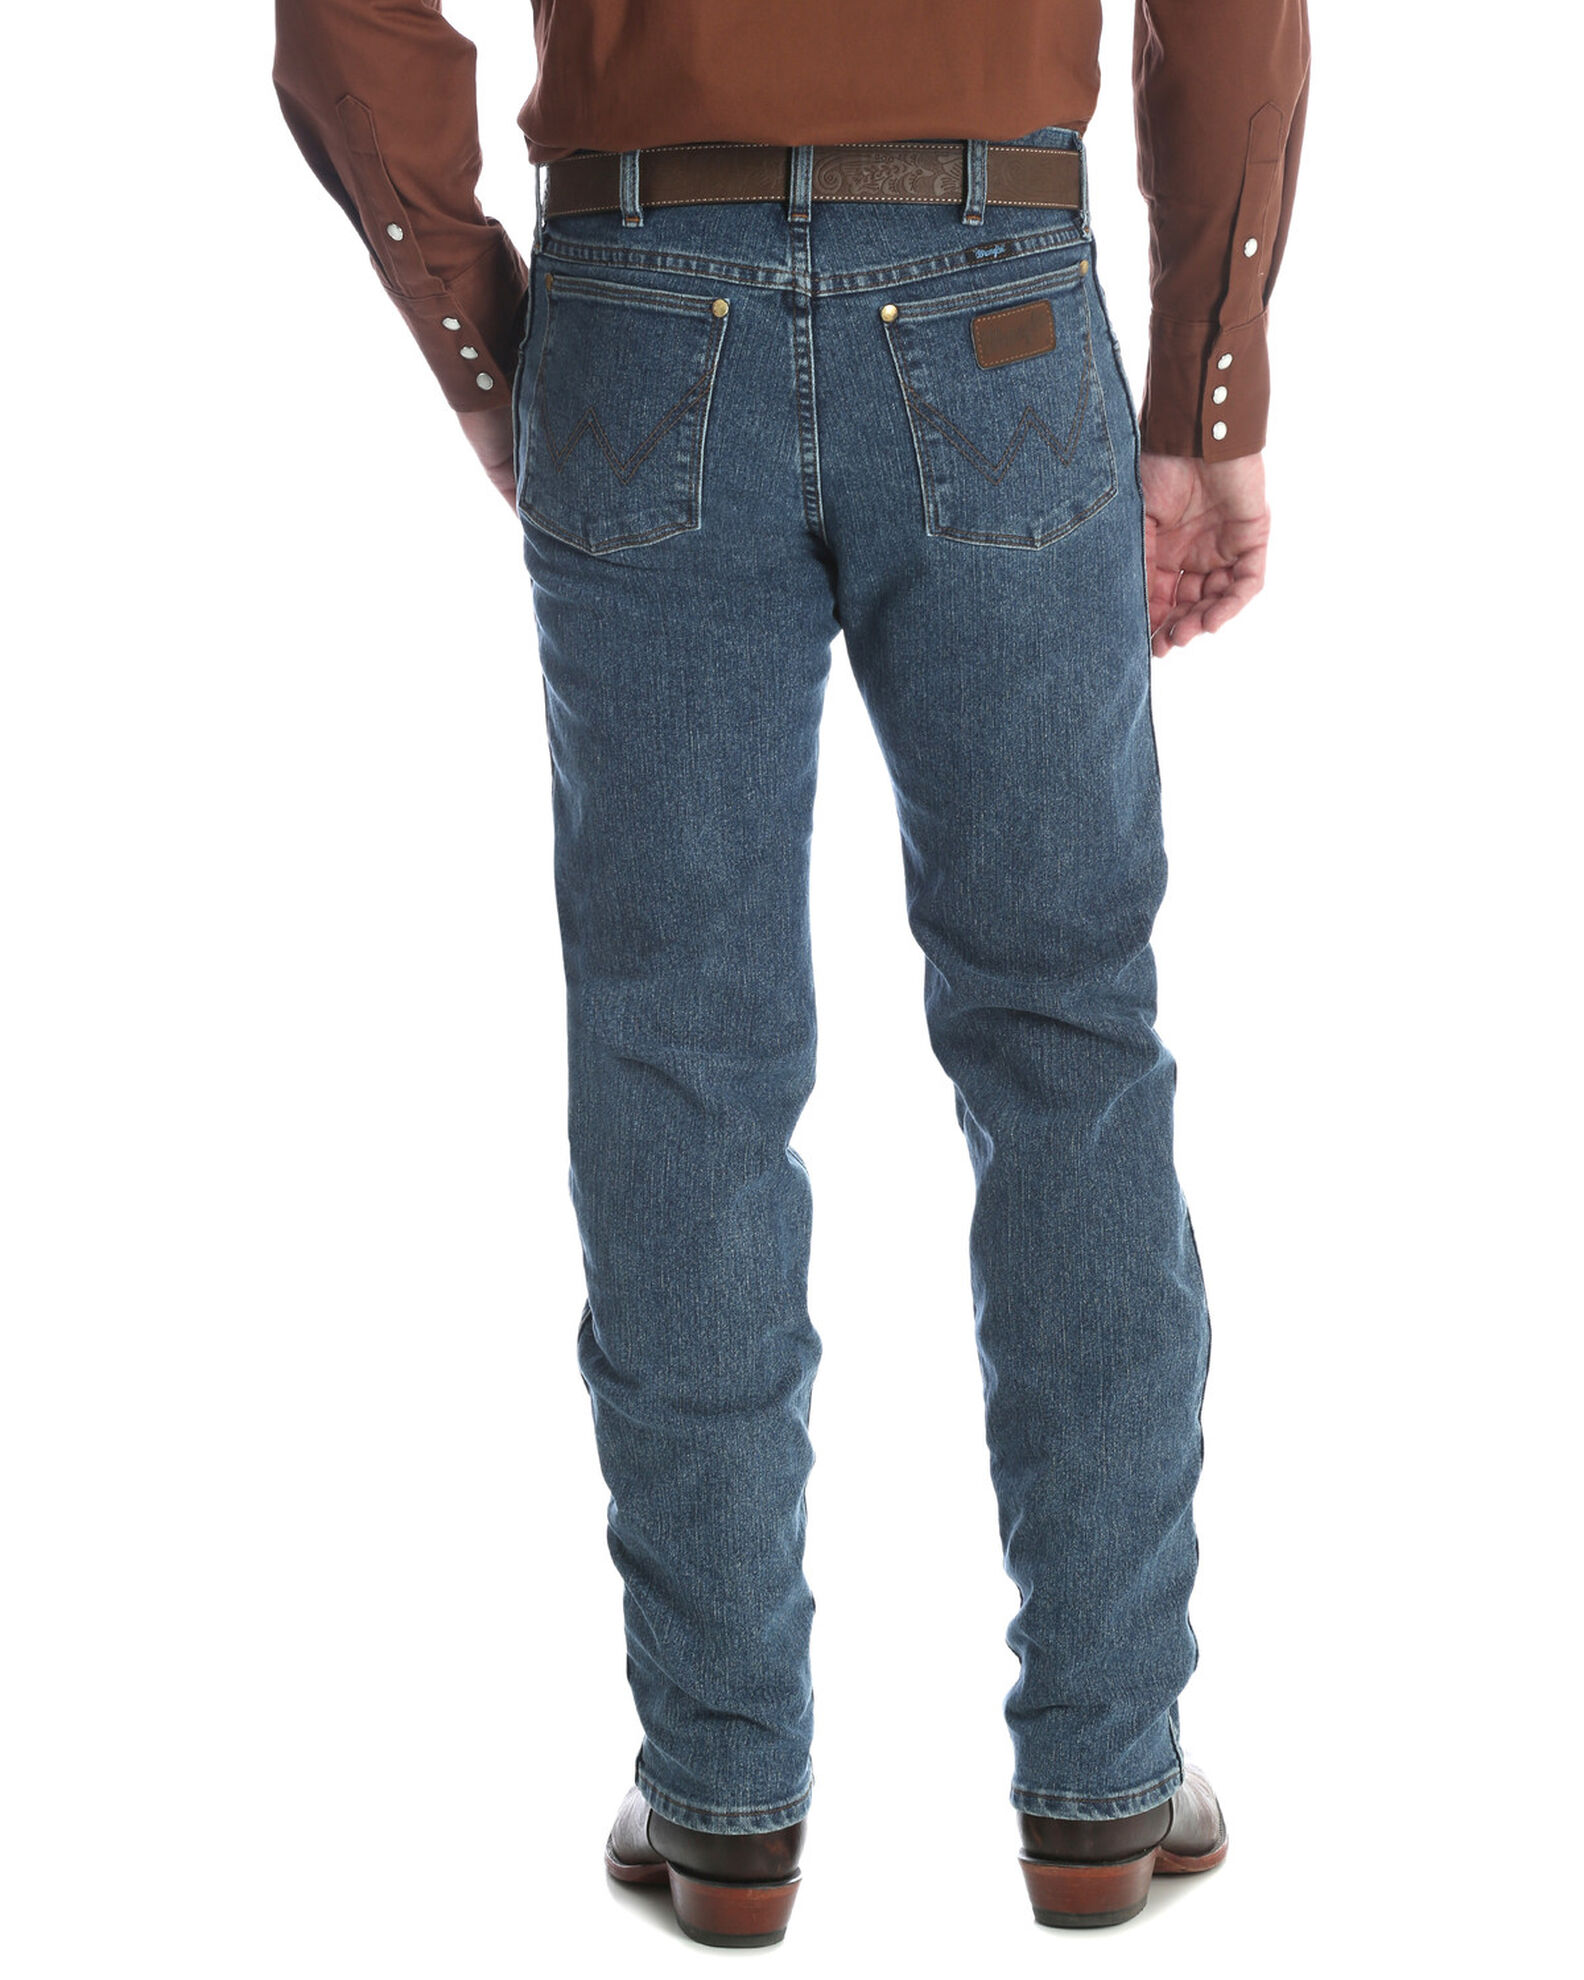 Introducir 52+ imagen cool vantage wrangler jeans